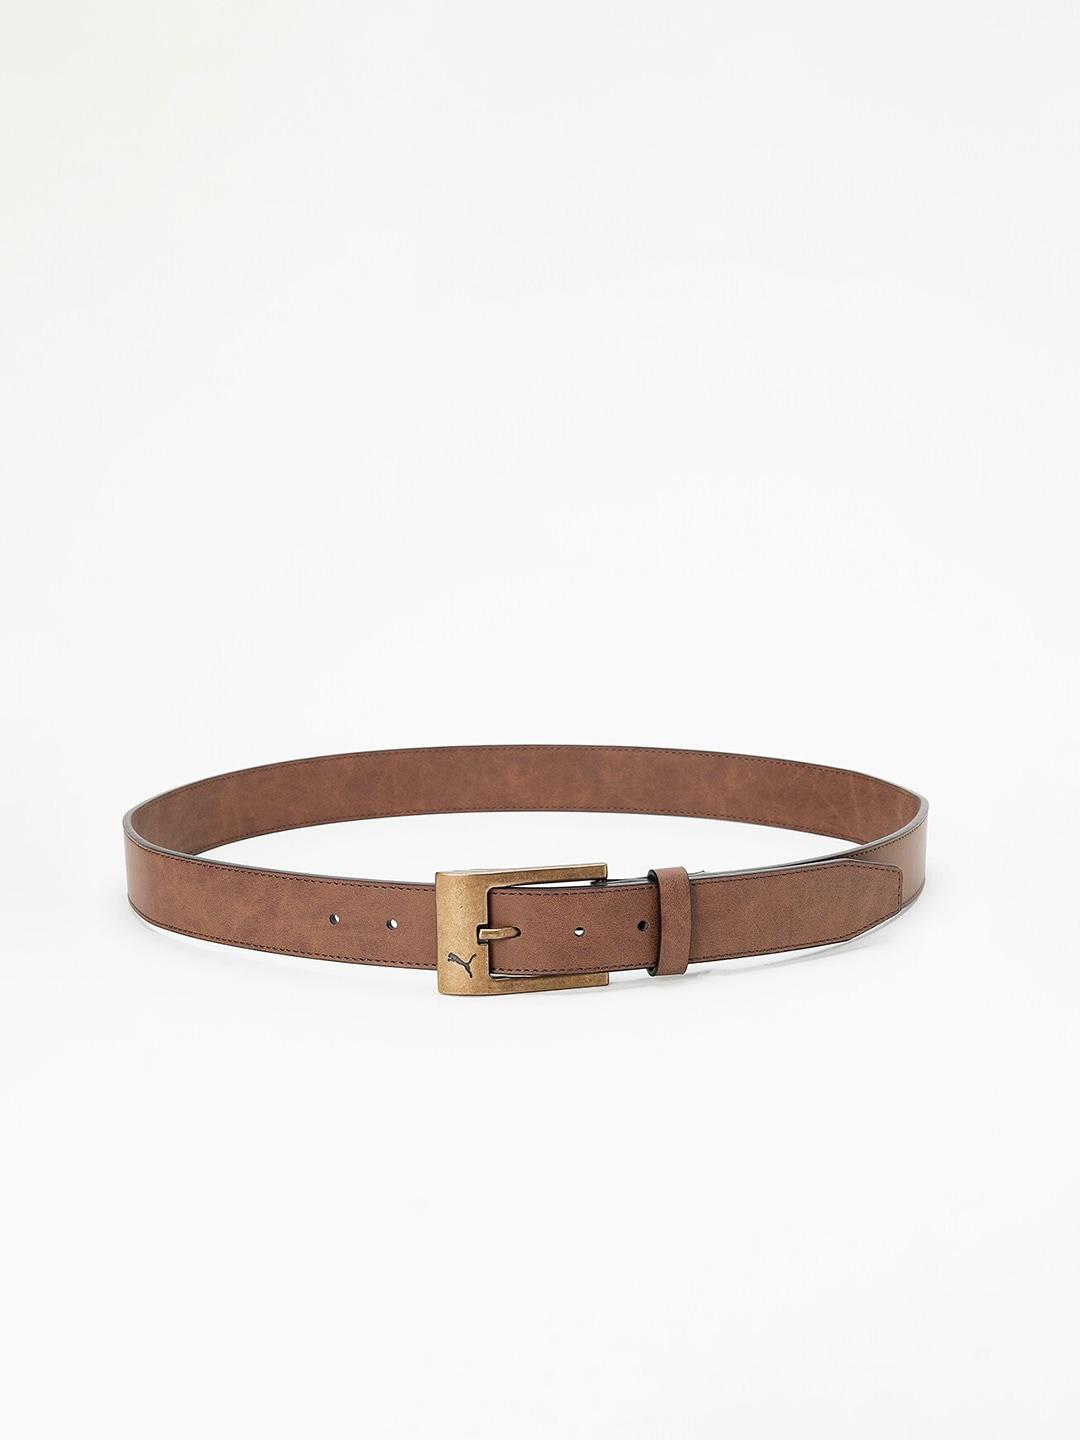 puma-stylised-belt